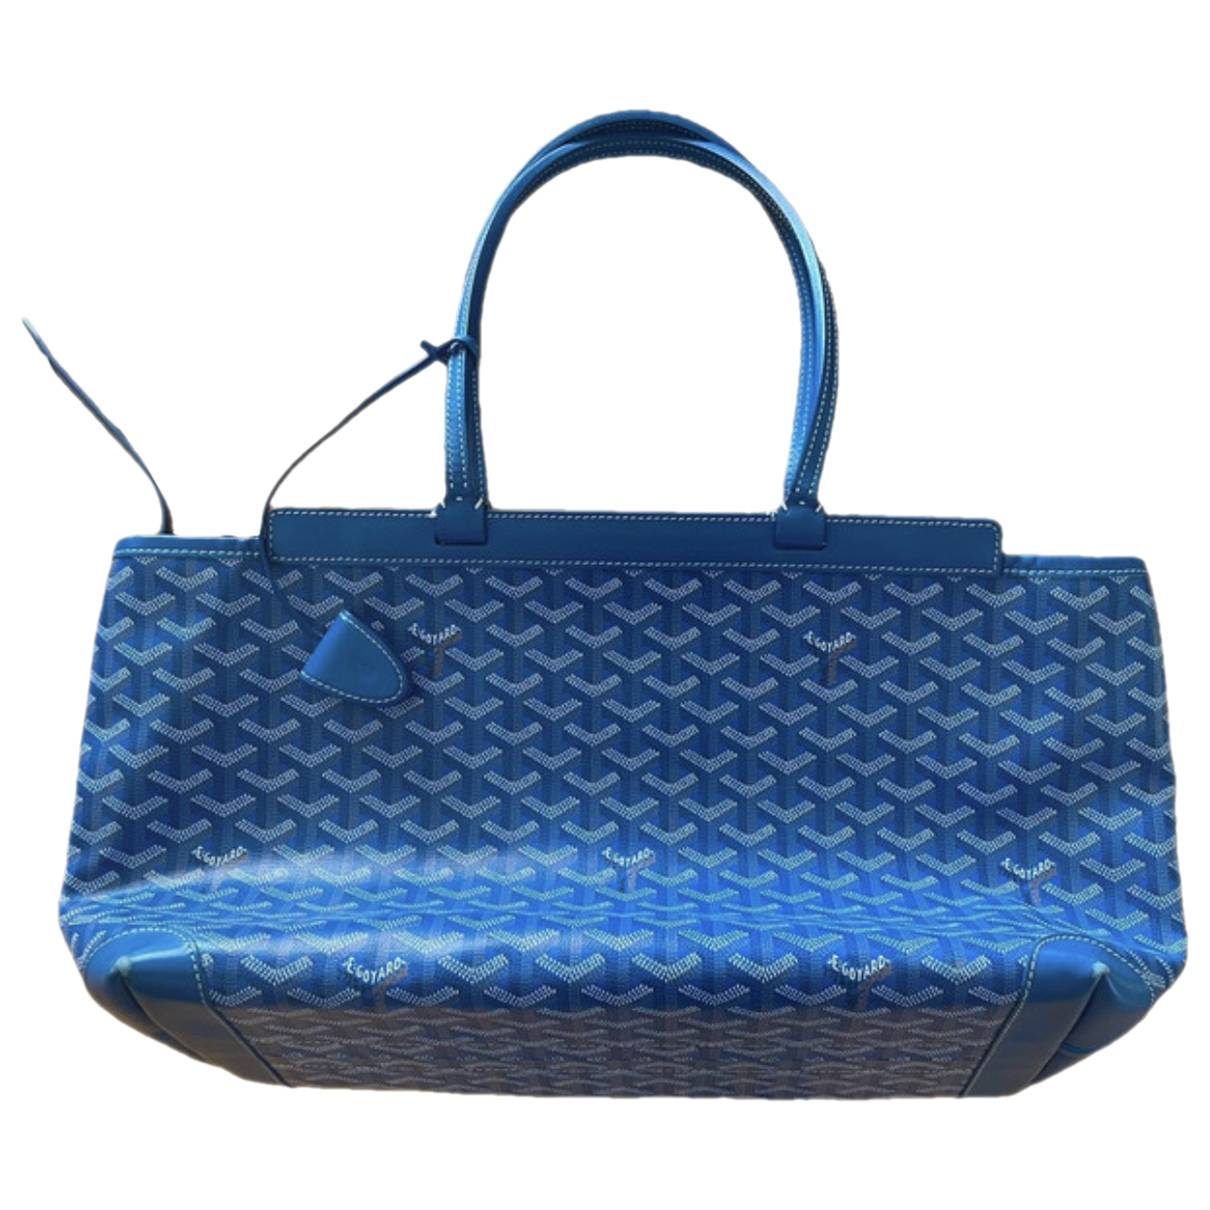 Bellechasse leather handbag Goyard Blue in Leather - 37323425